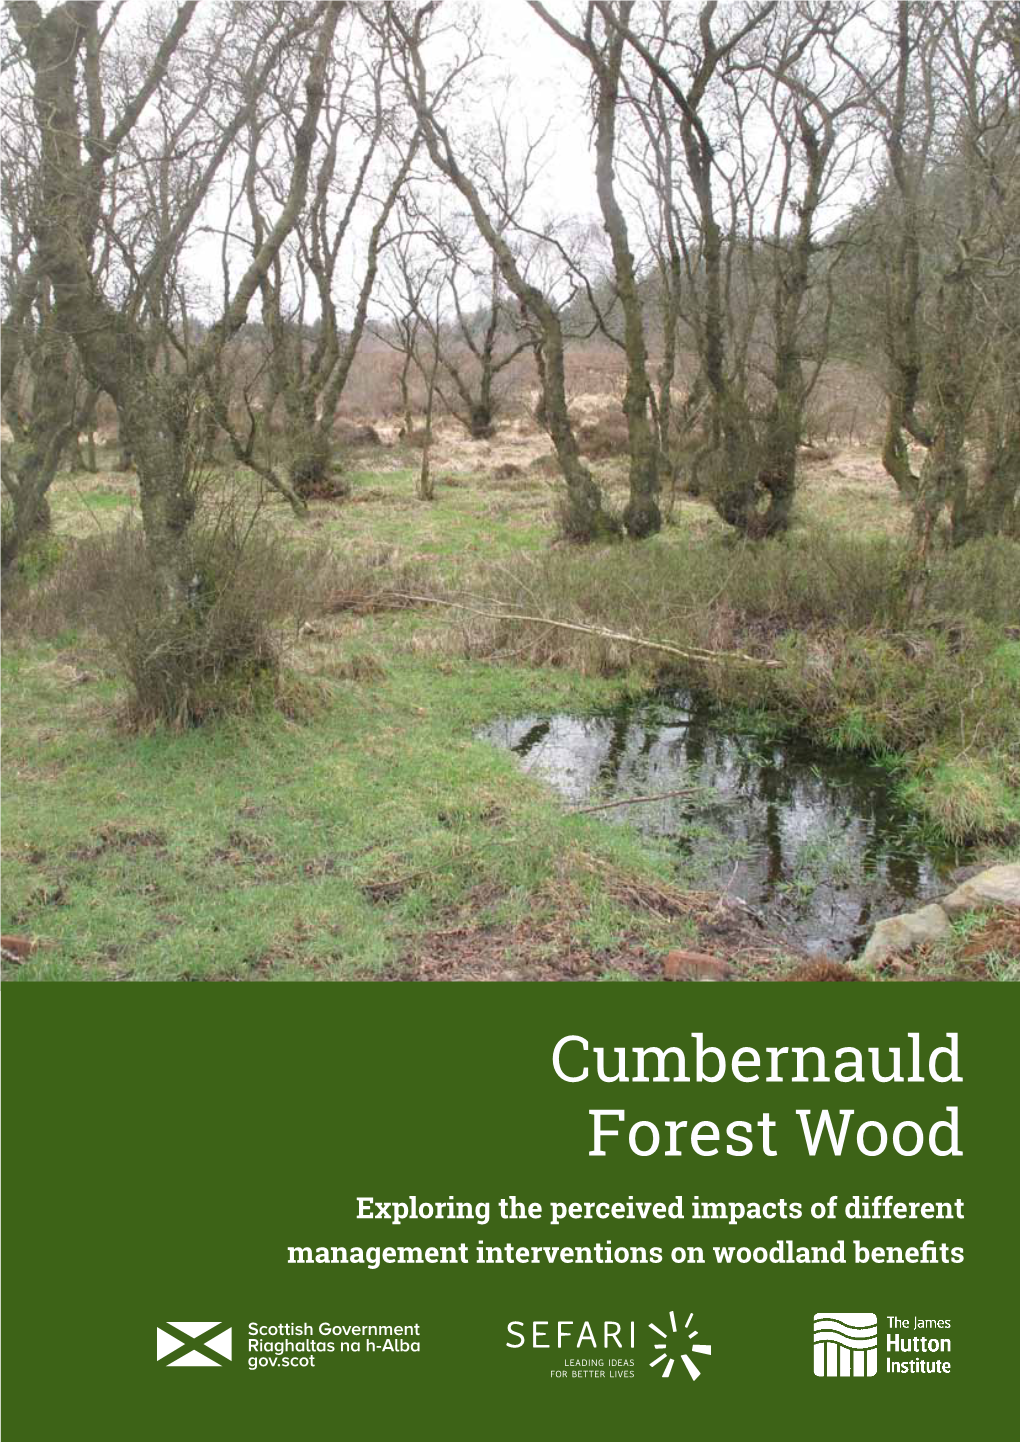 Cumbernauld Forest Wood